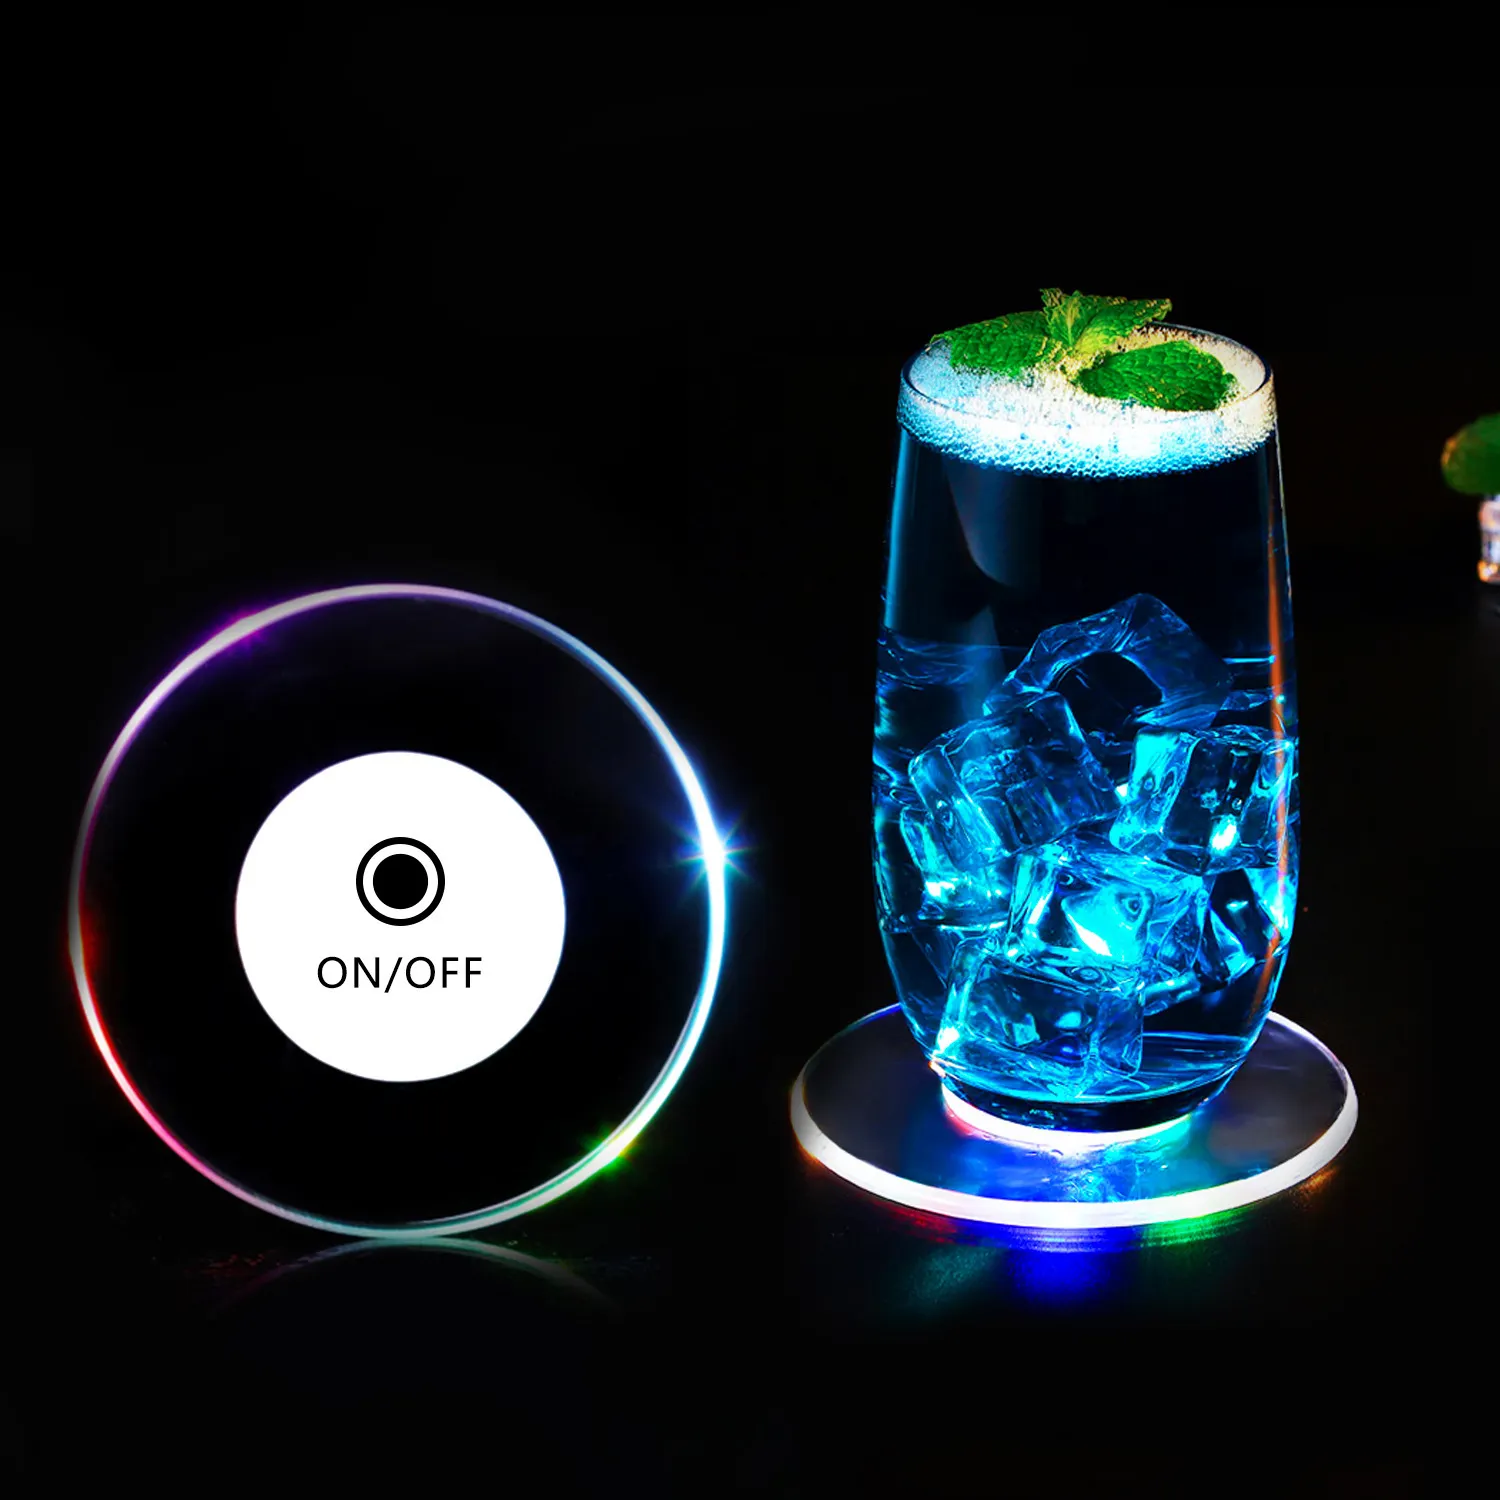 ZJI Coasters प्रकाश-अप Coasters एलईडी बोतल रोशनी का नेतृत्व किया आरजीबी रंगीन बोतल Glorifier अप स्टीकर Coasters डिस्क प्रकाश का नेतृत्व किया